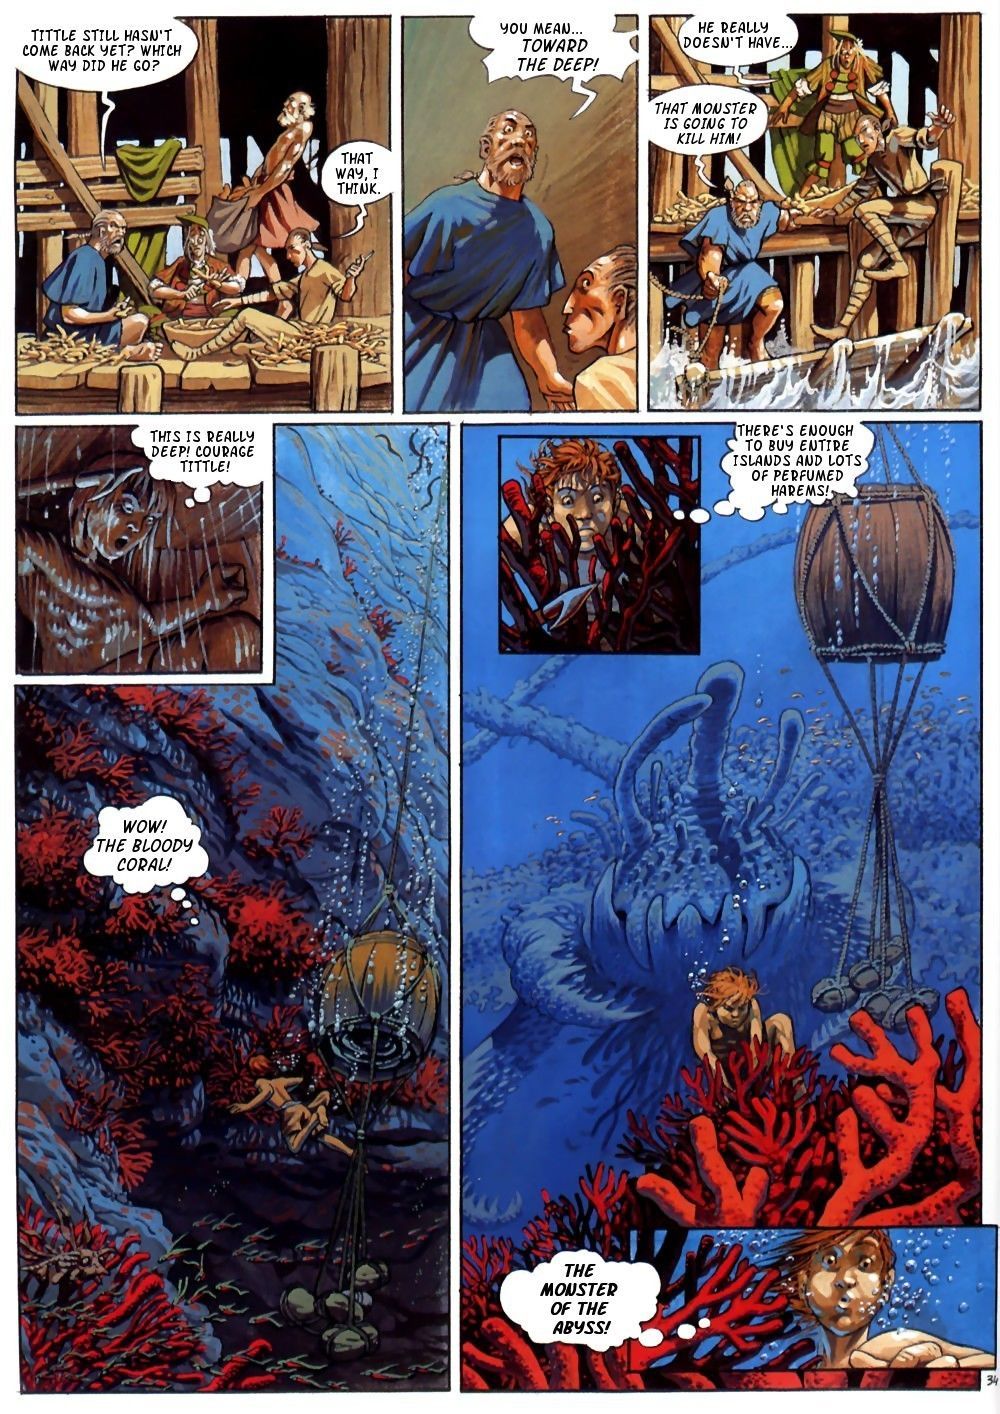 arleston mourier il incendi di askell #3: bloody corallo {jj} parte 2